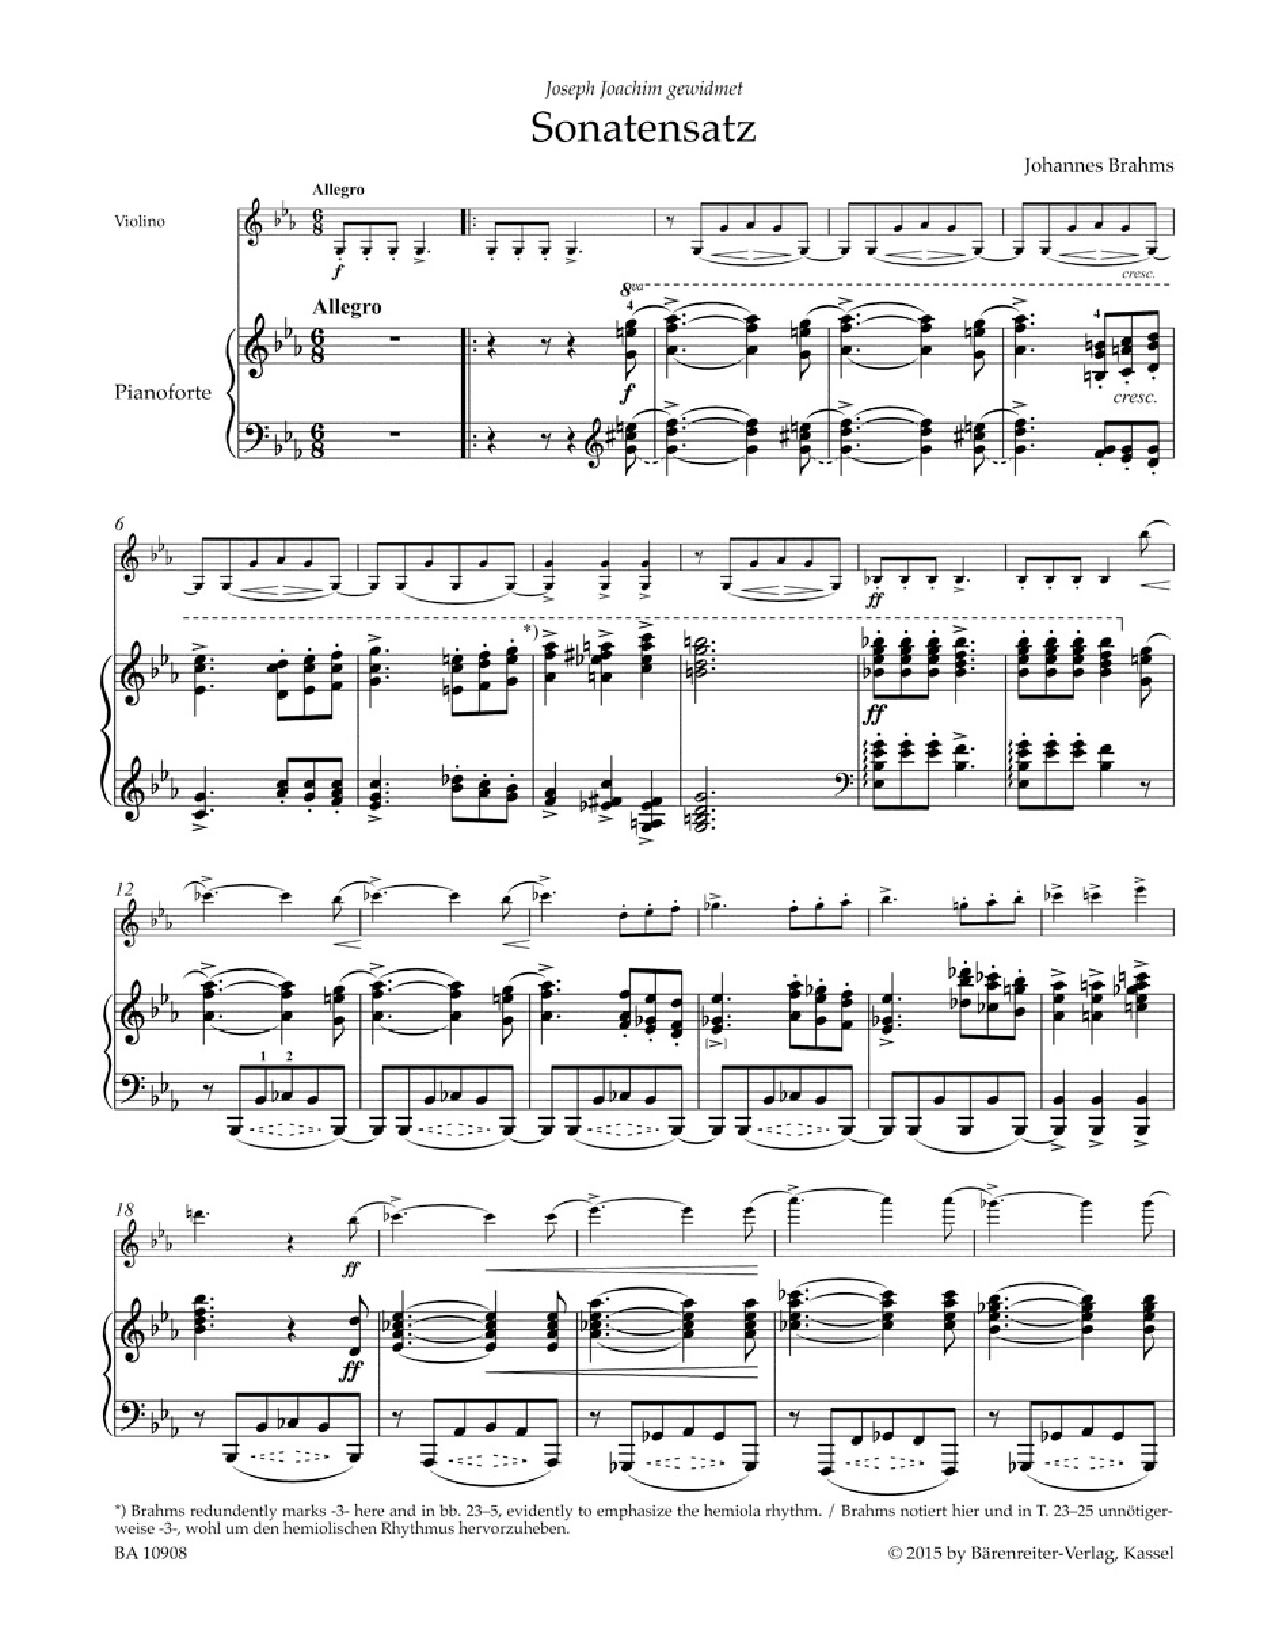 Sonata Movement from the F.A.E. Sonata Violin and Piano